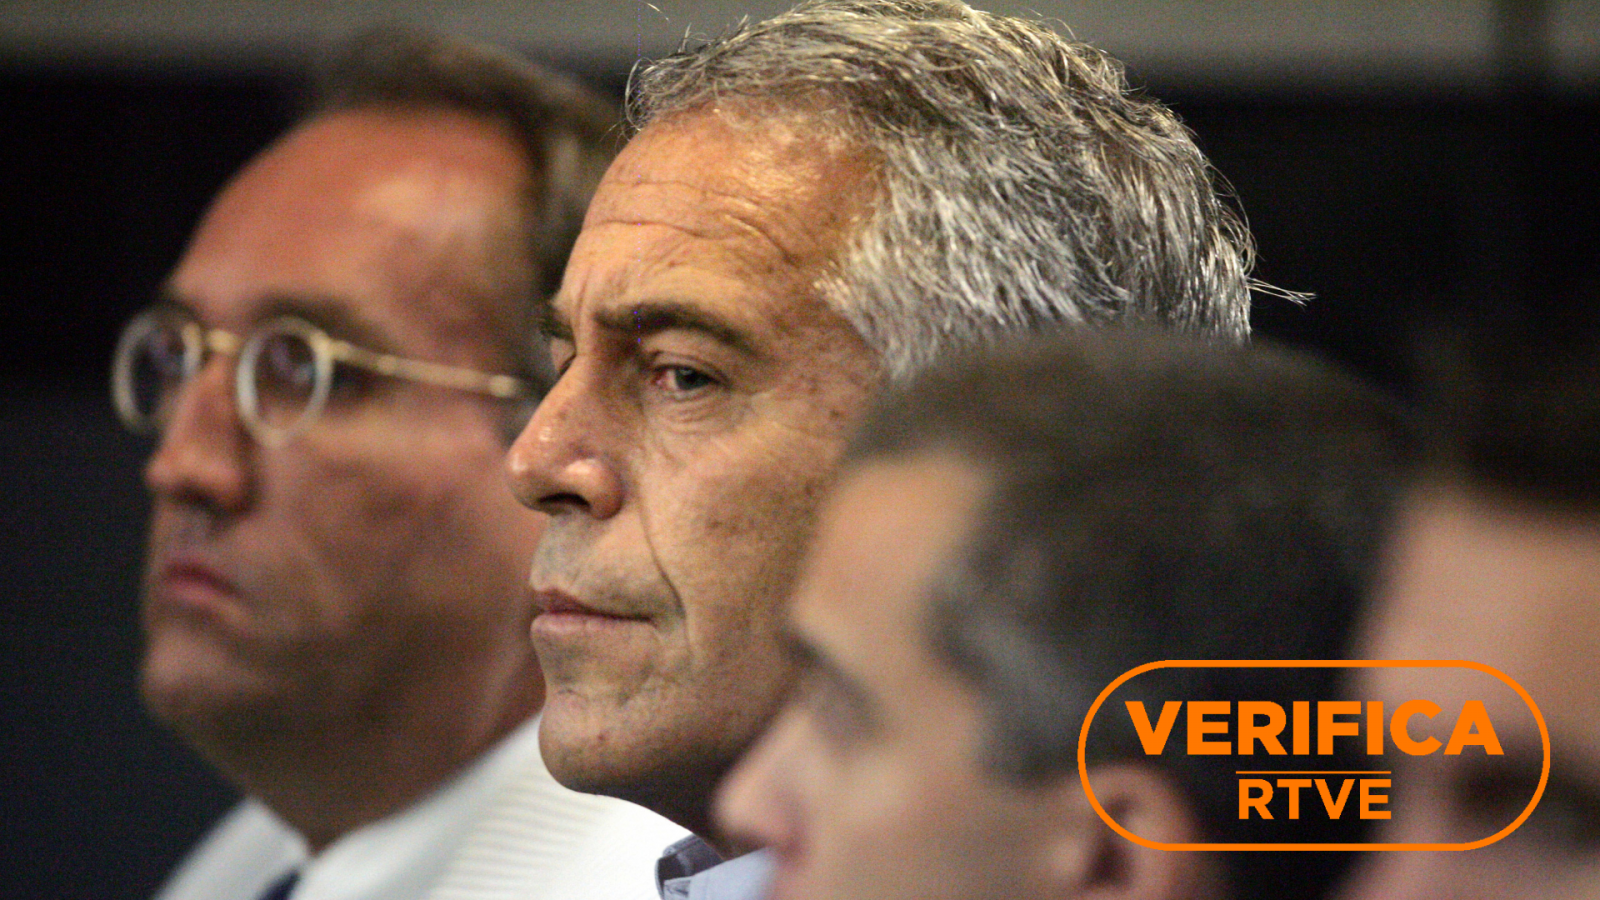 Caso Epstein: Jeffrey Epstein comparece ante el tribunal el 30 de julio de 2008 en Florida, con el sello de VerificaRTVE en naranja